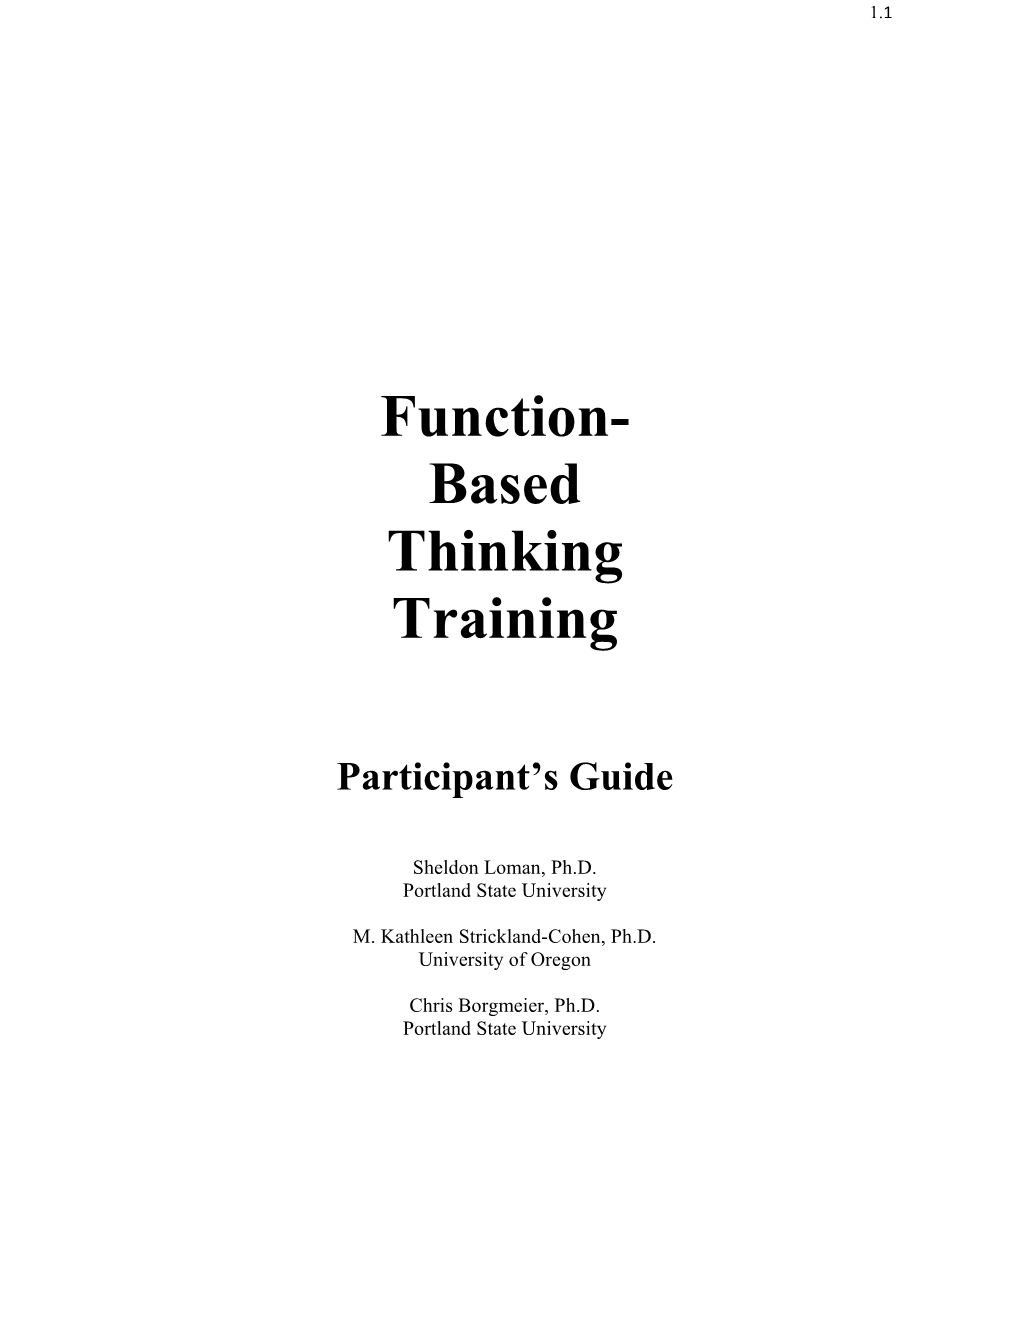 Function-Based Thinking Training